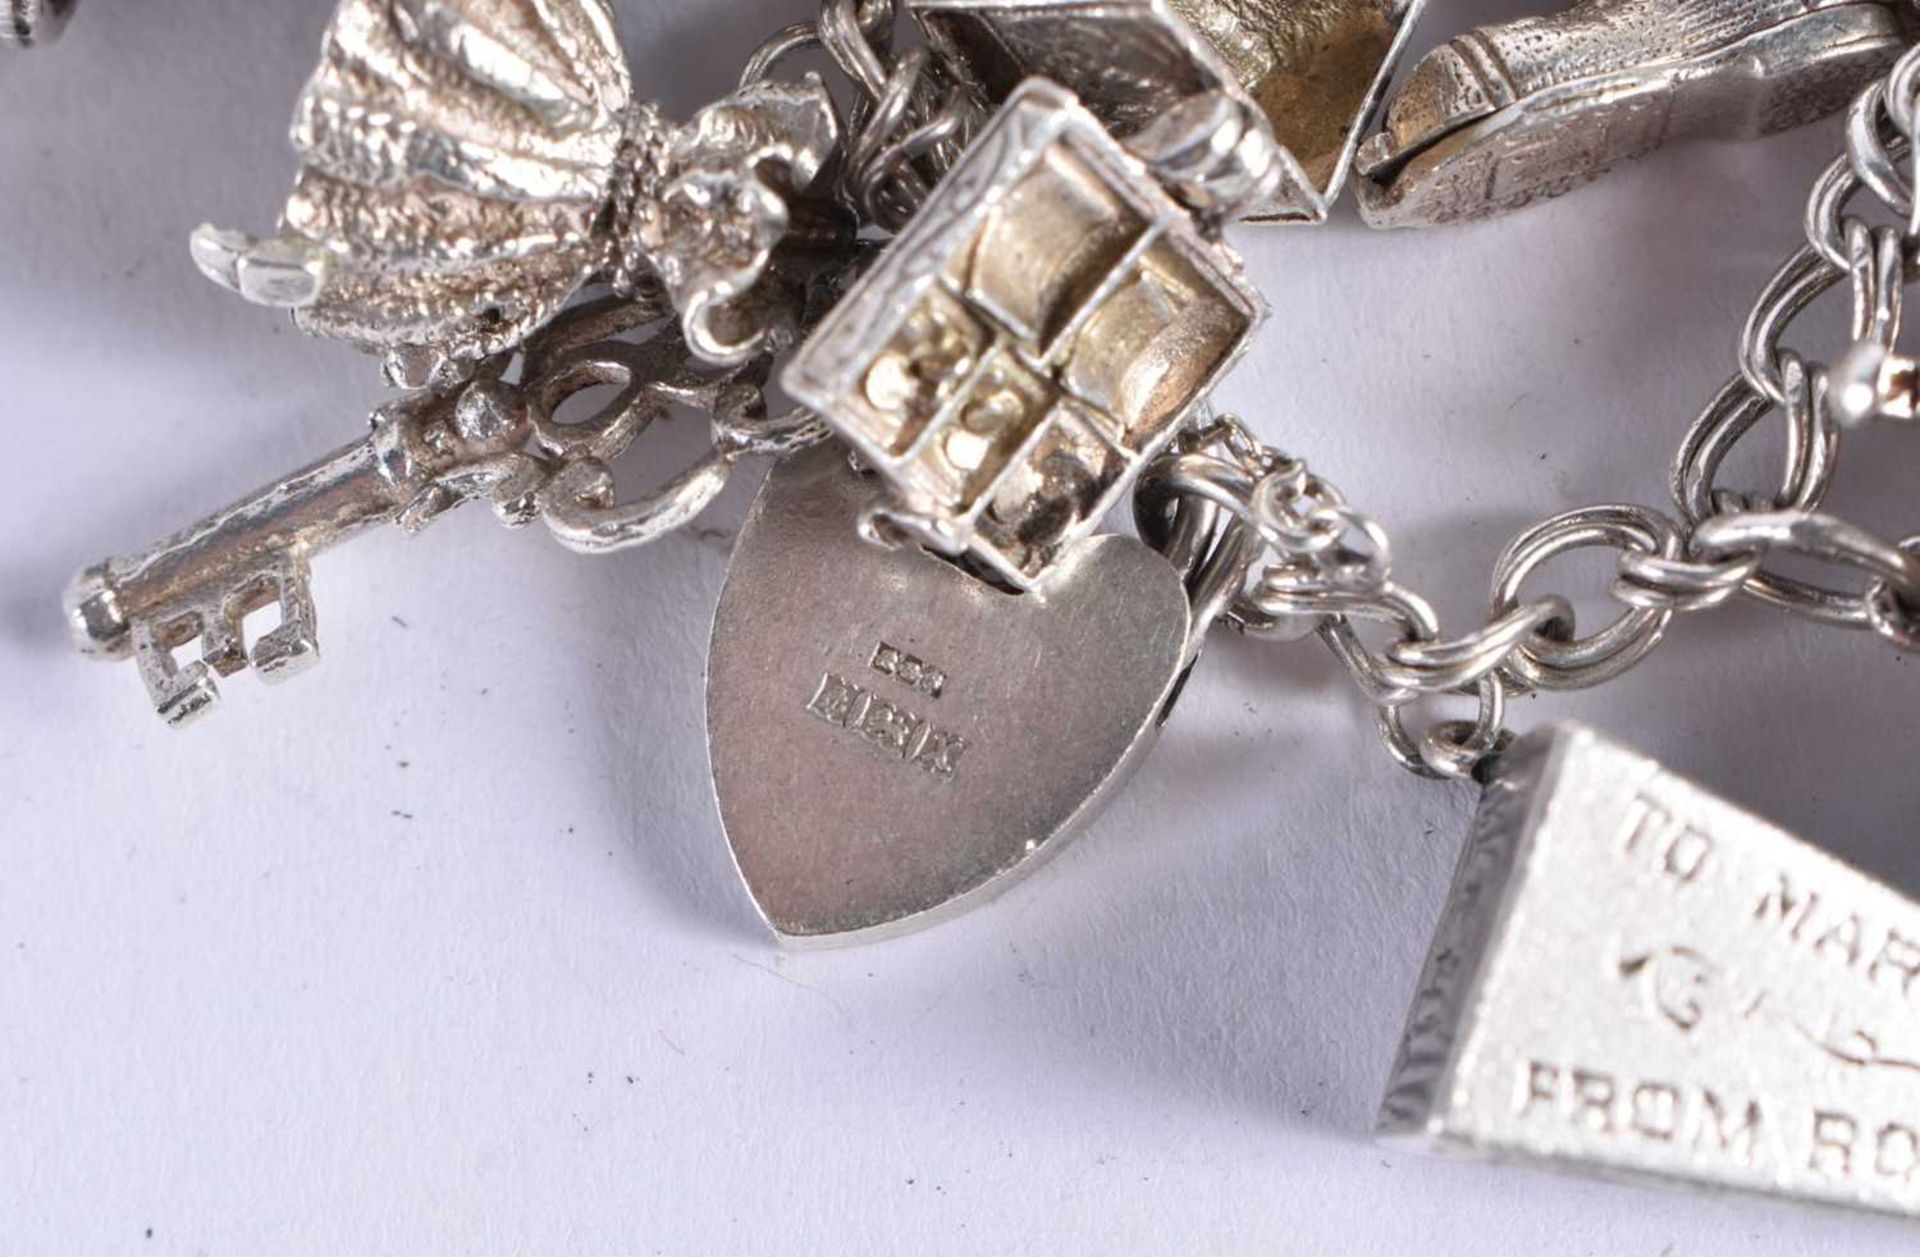 Silver charm bracelet including souvenir charms. 93.6 grams. 20 cm long. - Image 6 of 7